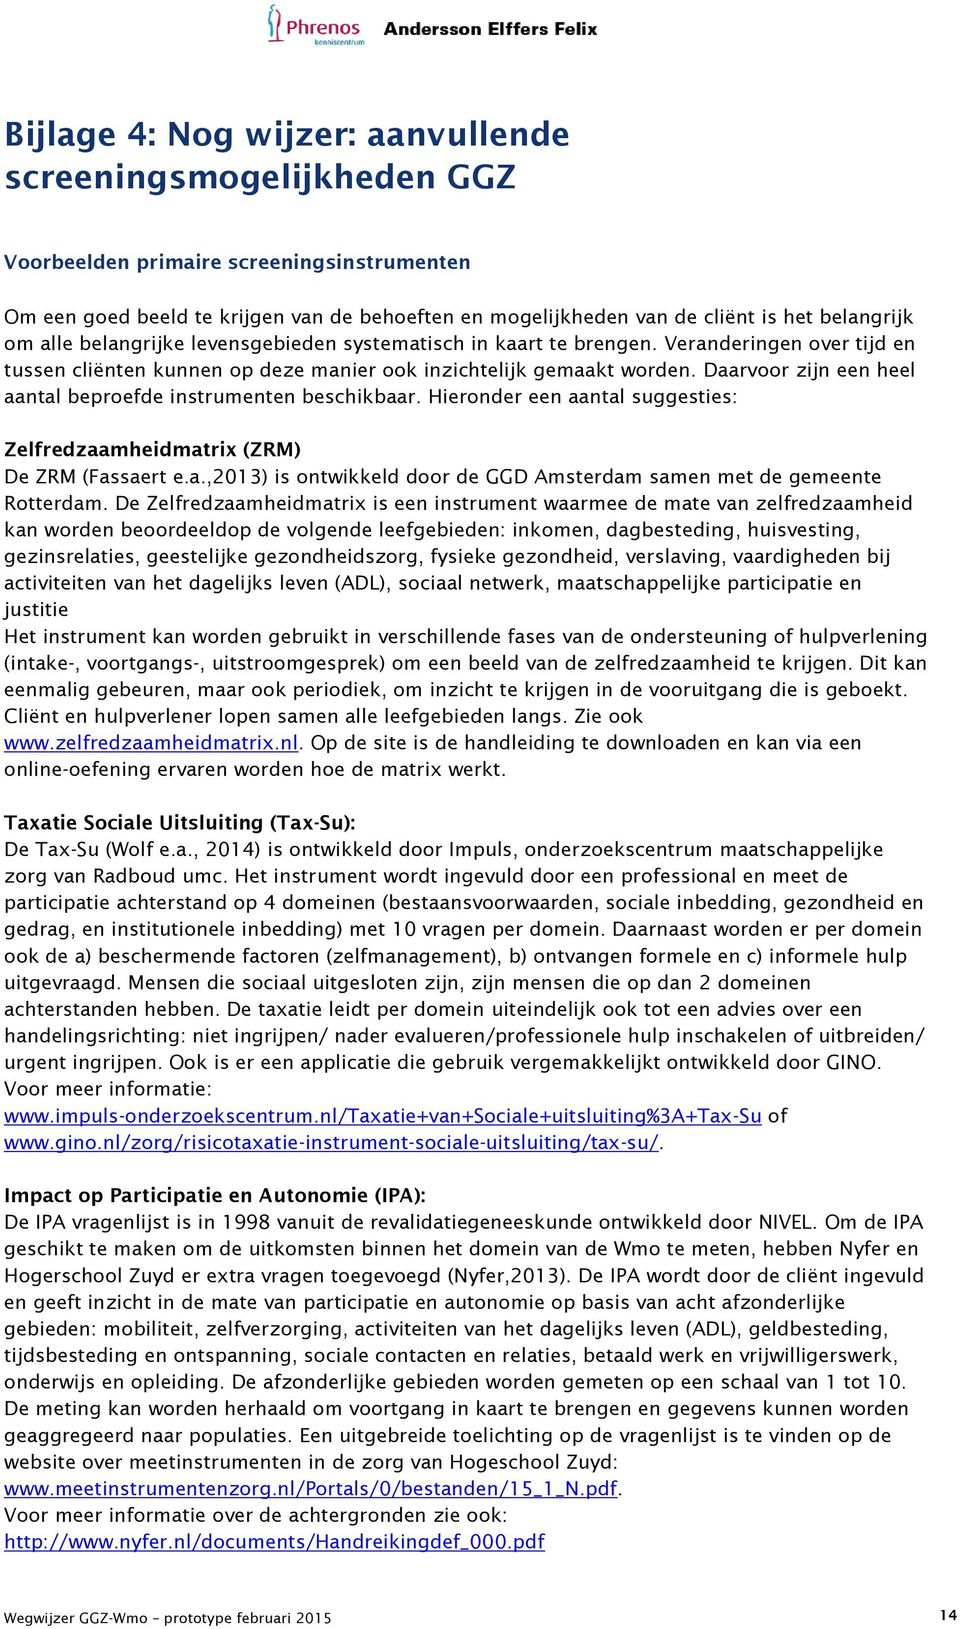 Daarvoor zijn een heel aantal beproefde instrumenten beschikbaar. Hieronder een aantal suggesties: Zelfredzaamheidmatrix (ZRM) De ZRM (Fassaert e.a.,2013) is ontwikkeld door de GGD Amsterdam samen met de gemeente Rotterdam.